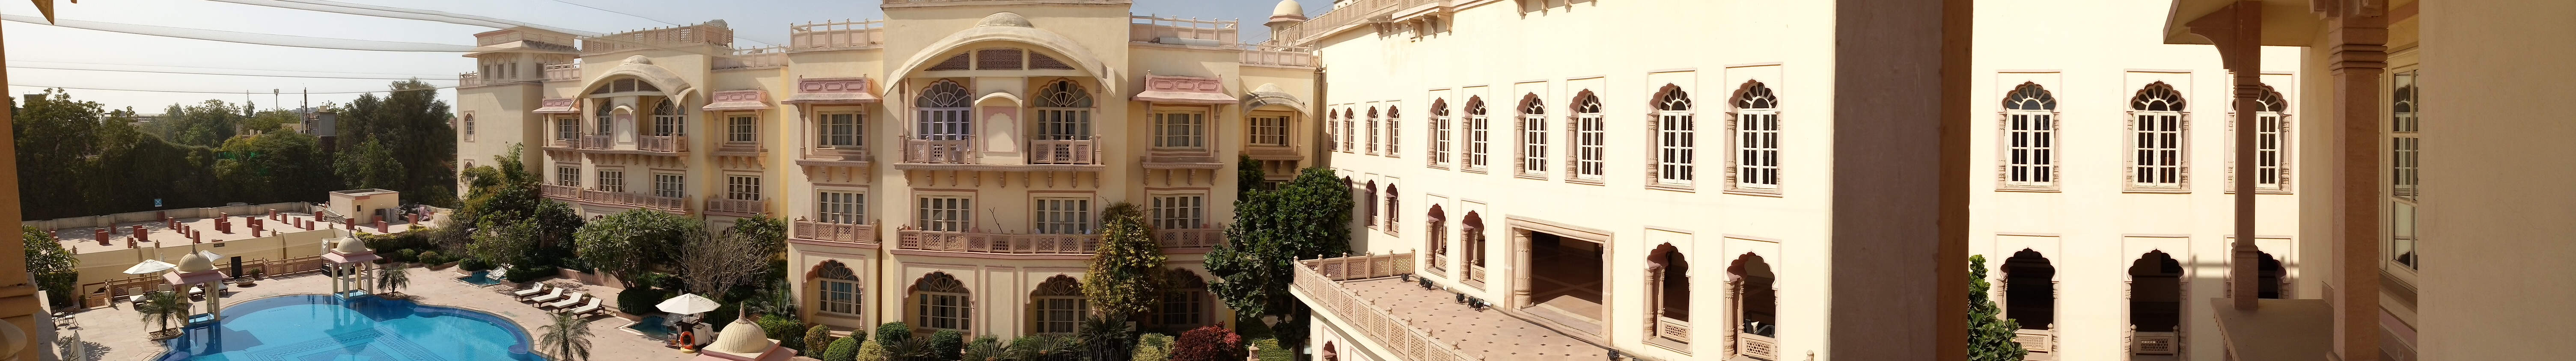 Hotel Taj Hari Mahal Jodhpur